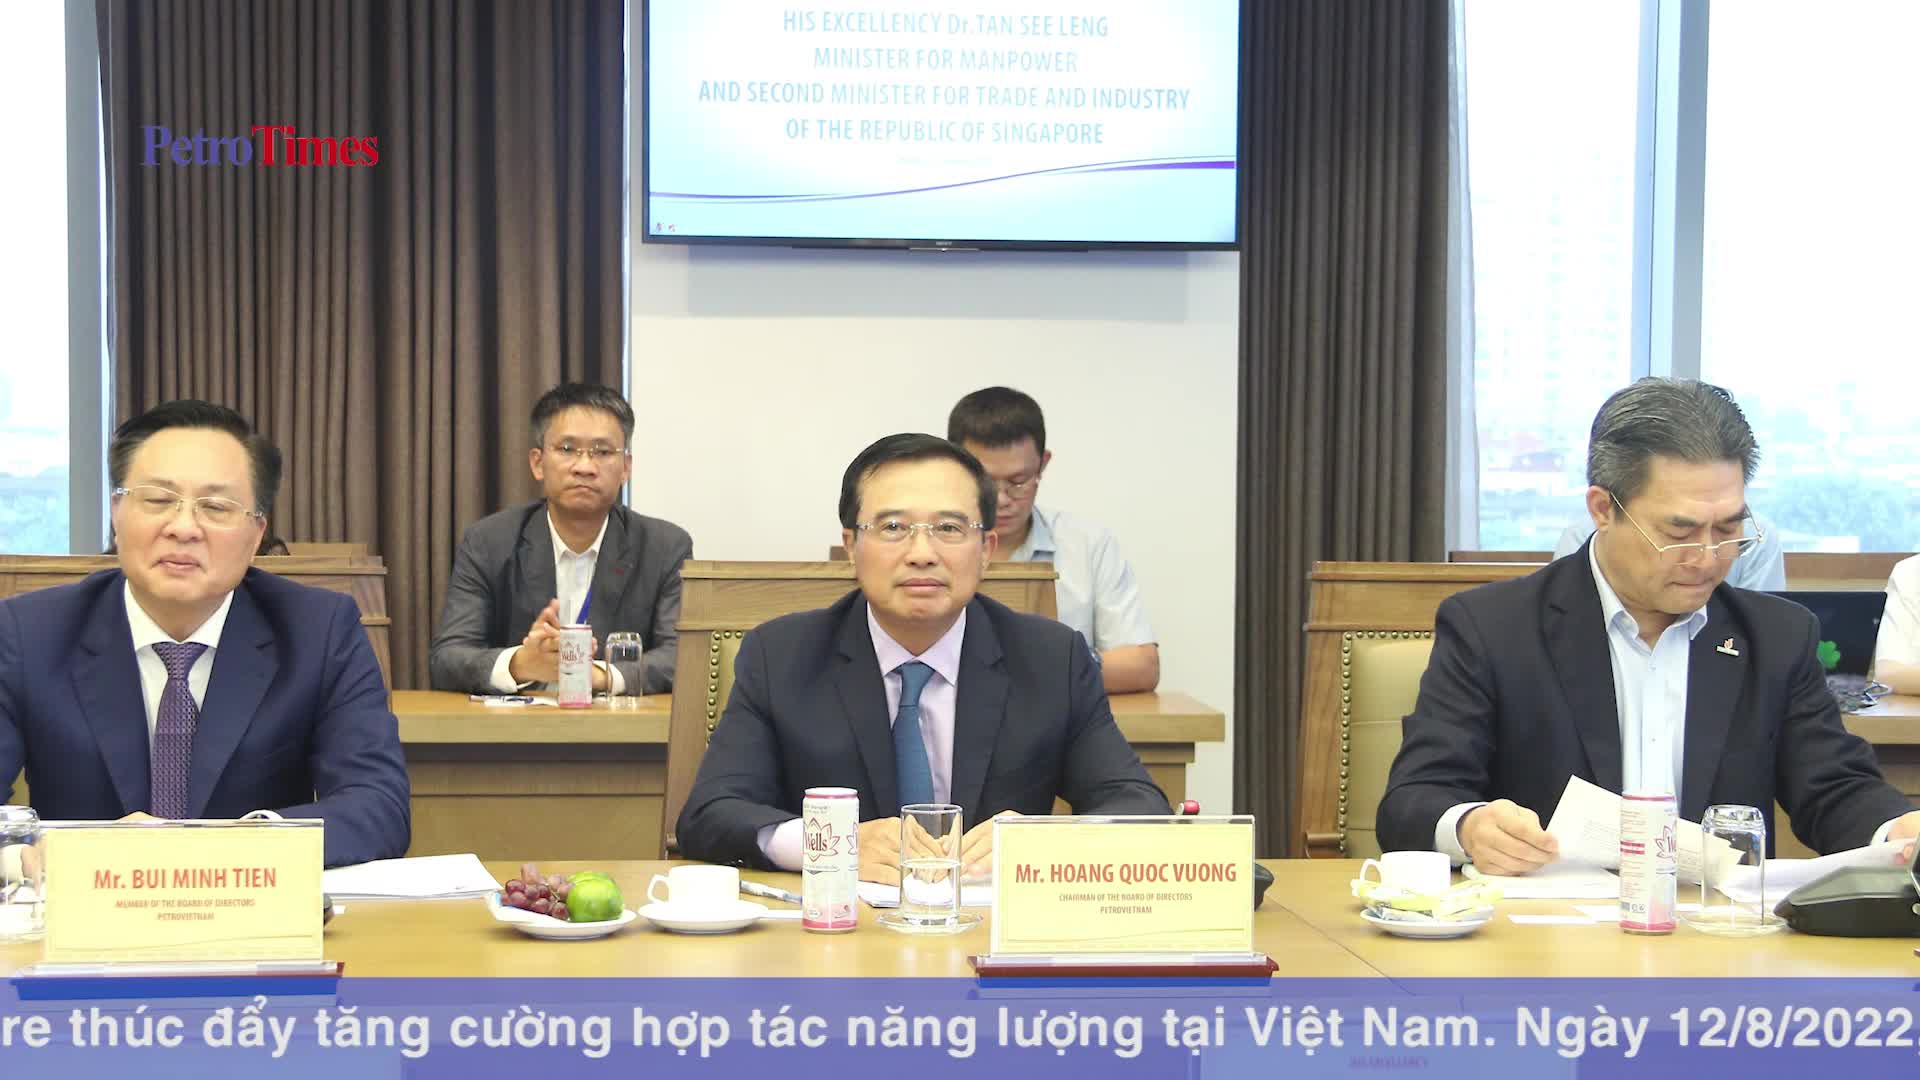 Petrovietnam và Singapore thúc đẩy tăng cường hợp tác năng lượng tại Việt Nam